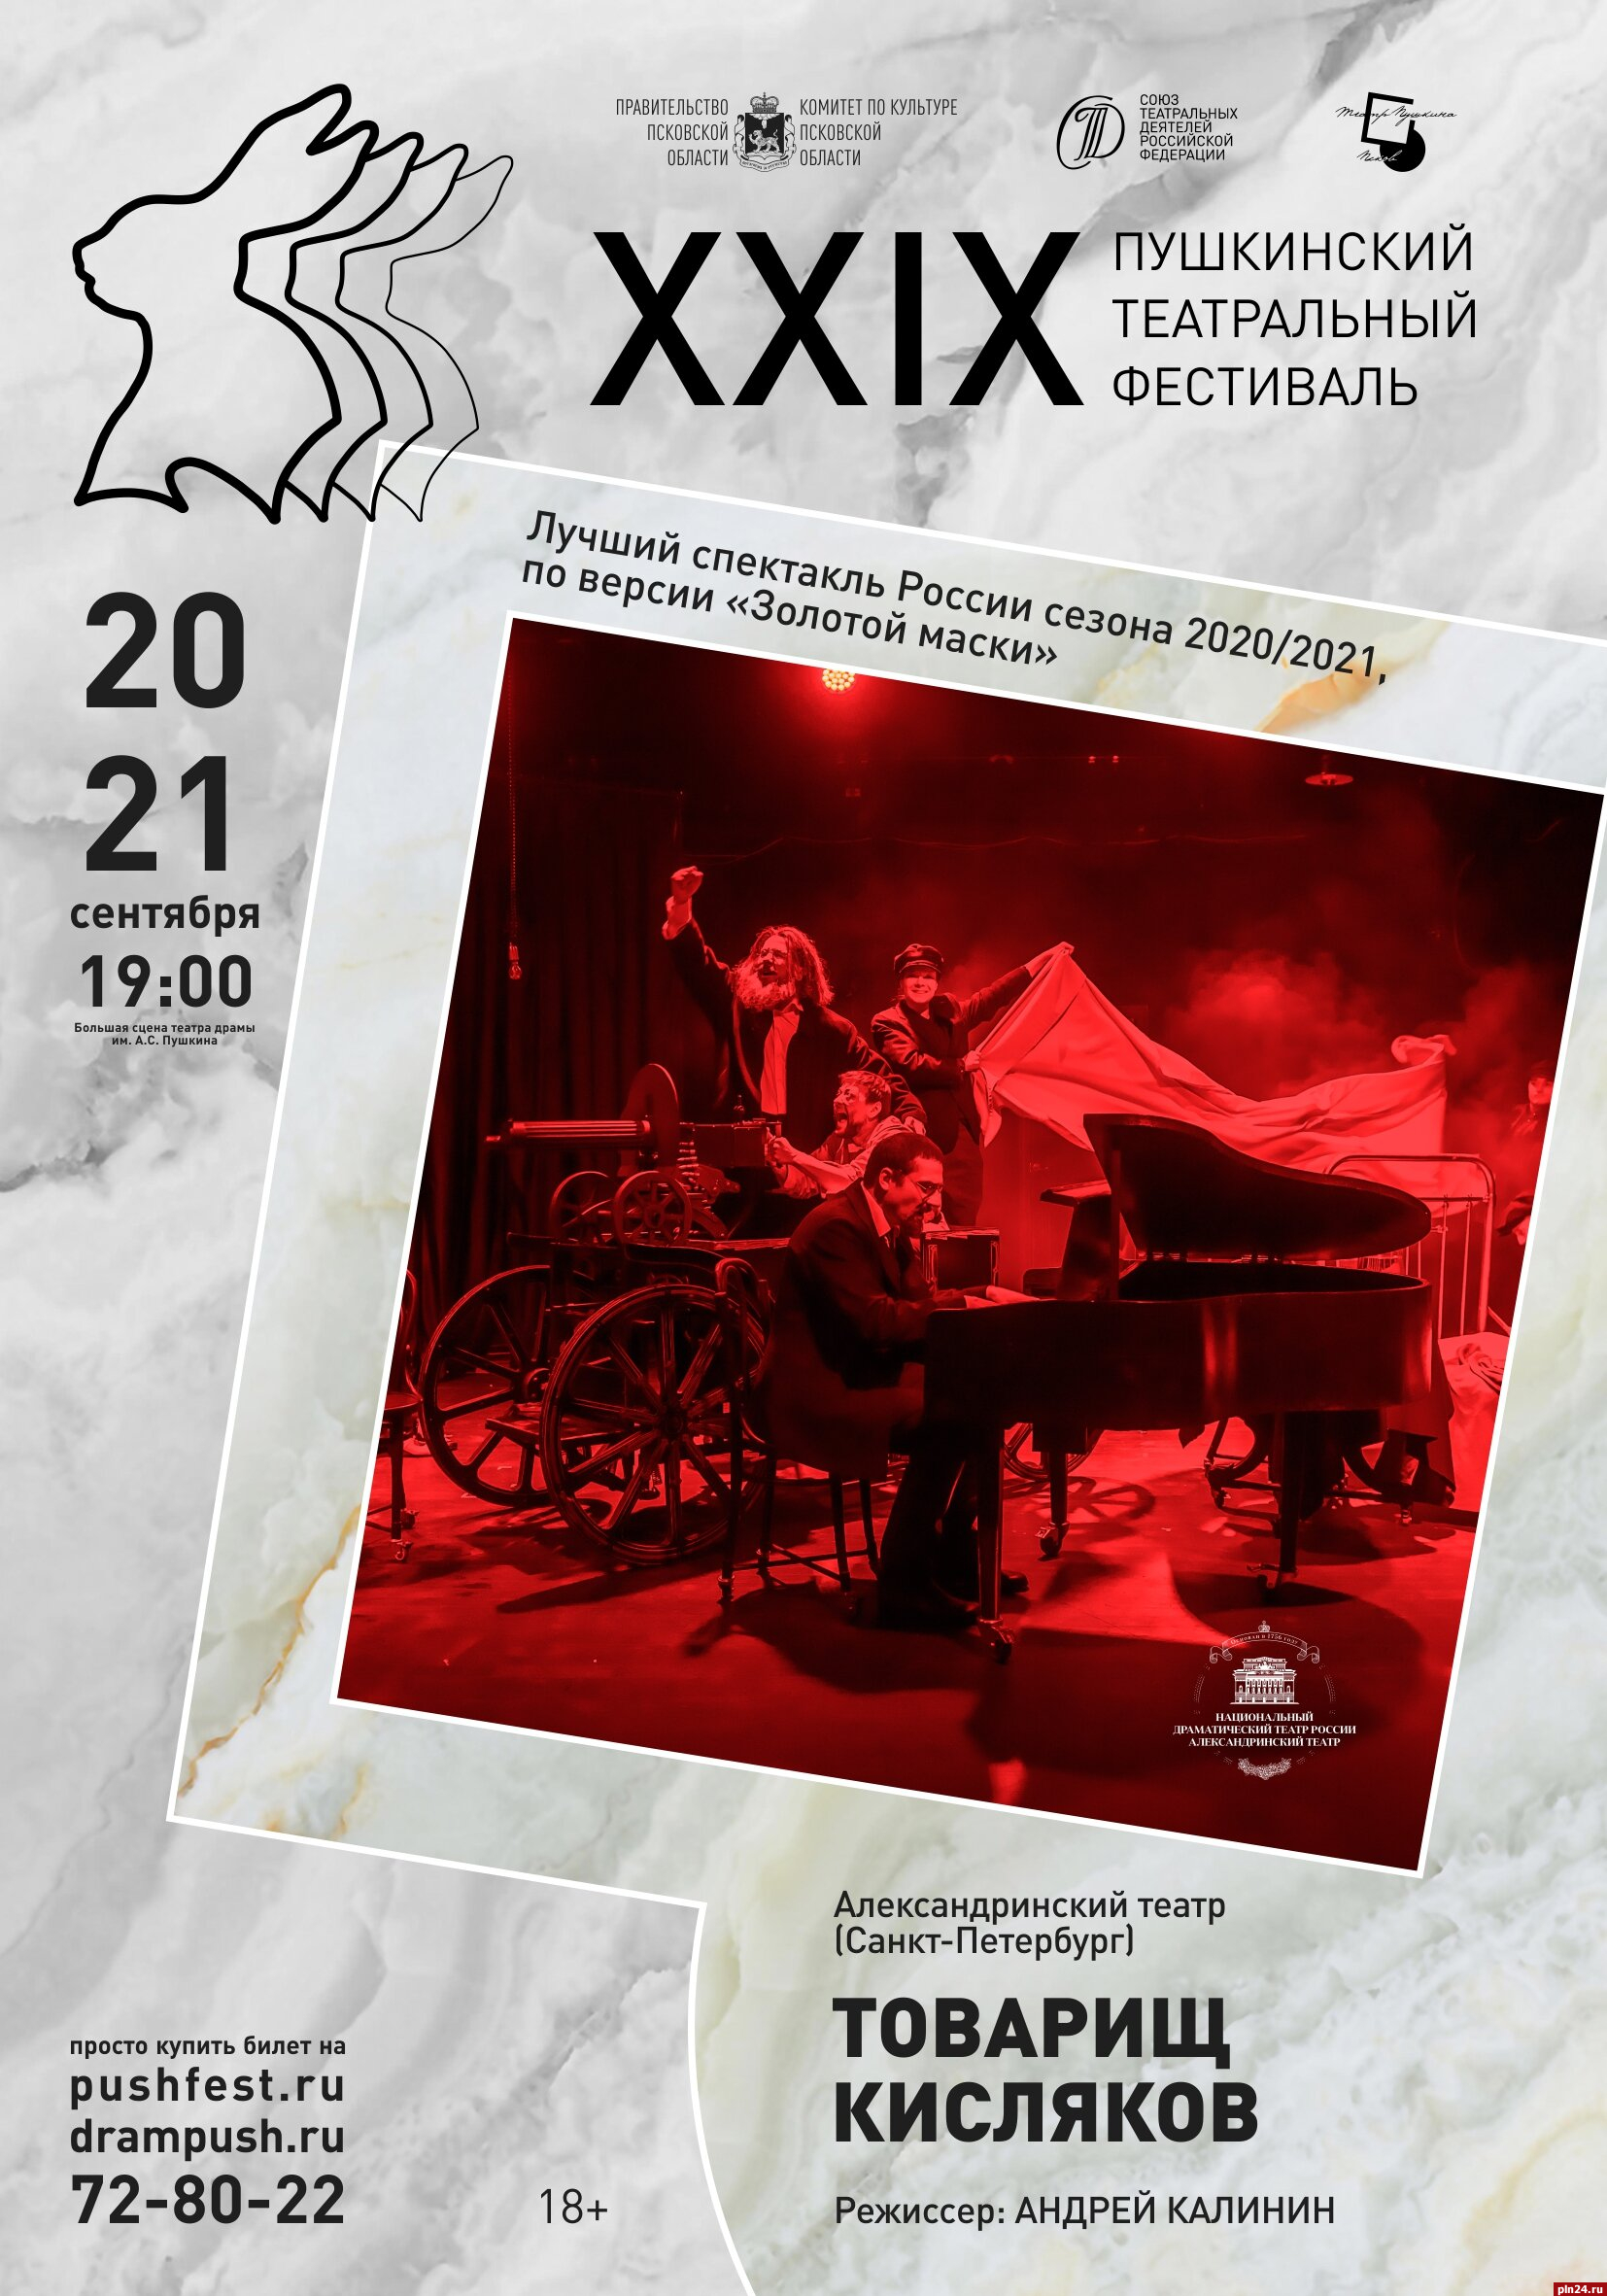 Пушкинский театральный фестиваль откроется спектаклем Александринского театра «Товарищ Кисляков»